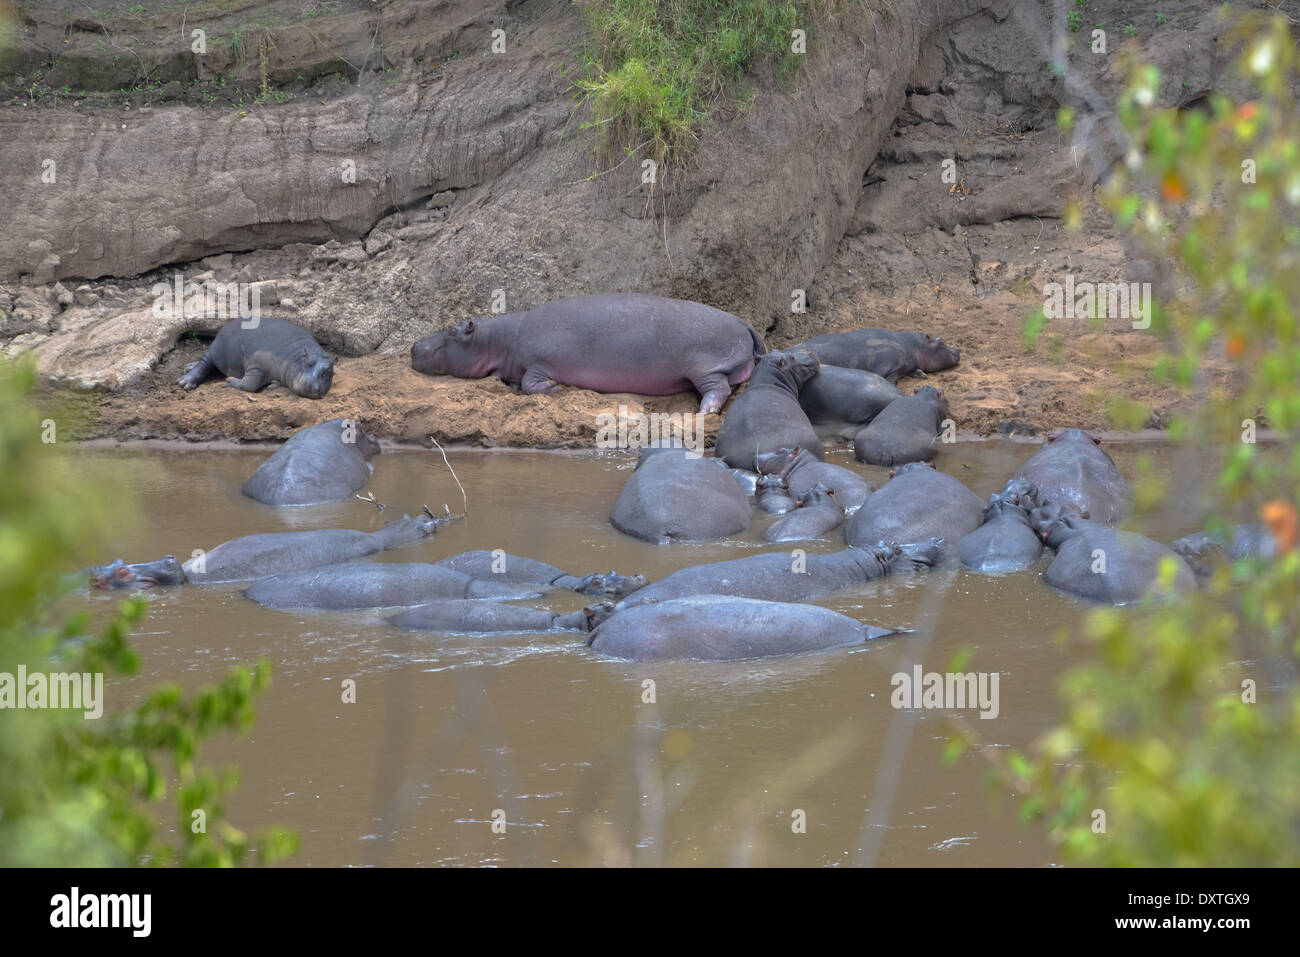 Un groupe d'hippopotames au Parc national du Masai Mara au Kenya Banque D'Images